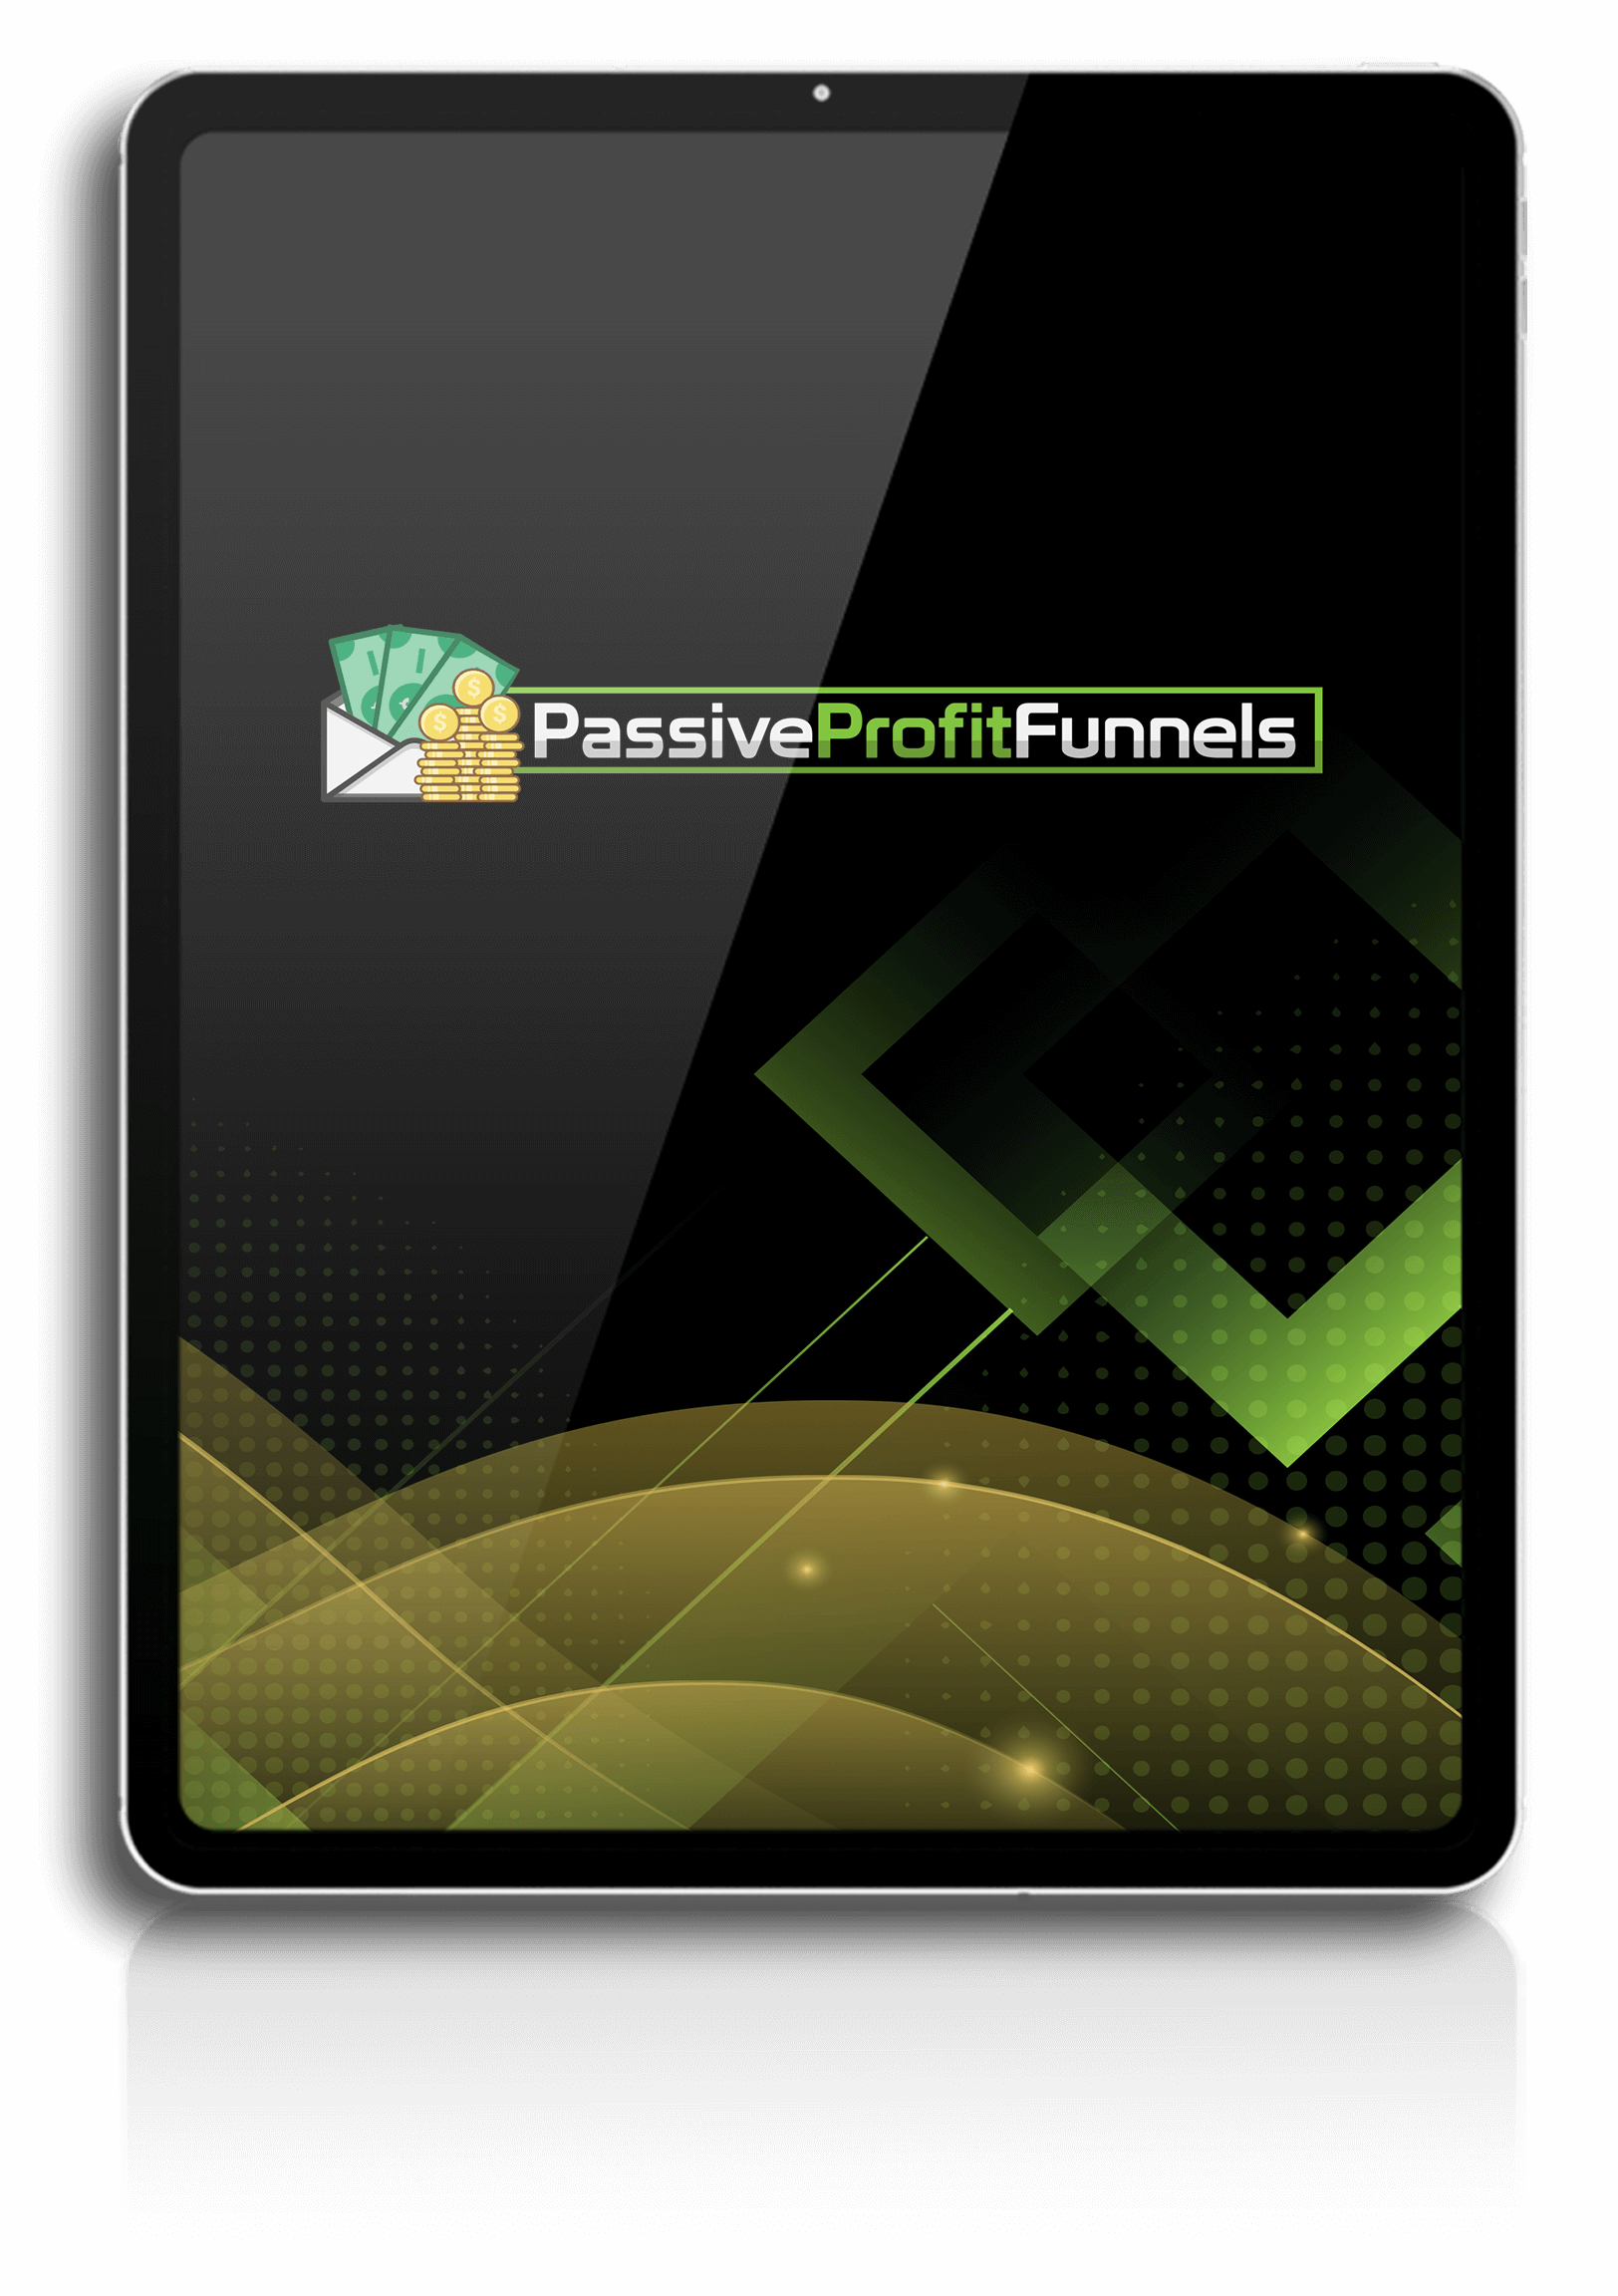 Passive profit funnels